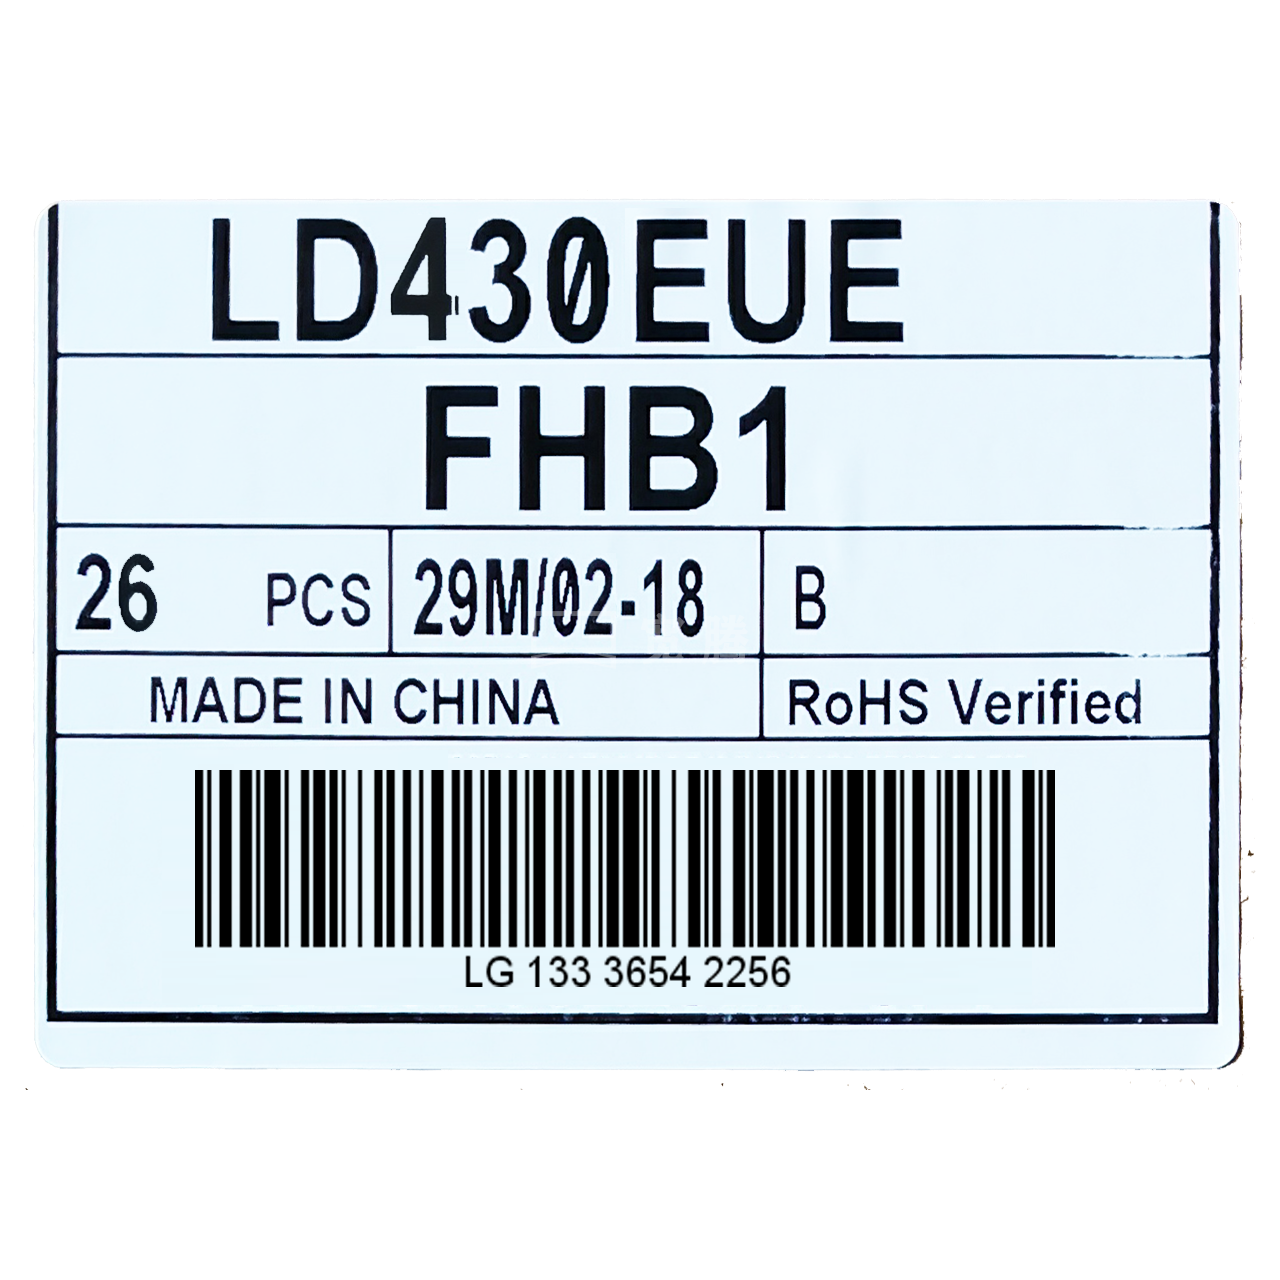 LD430EUE-FHB1